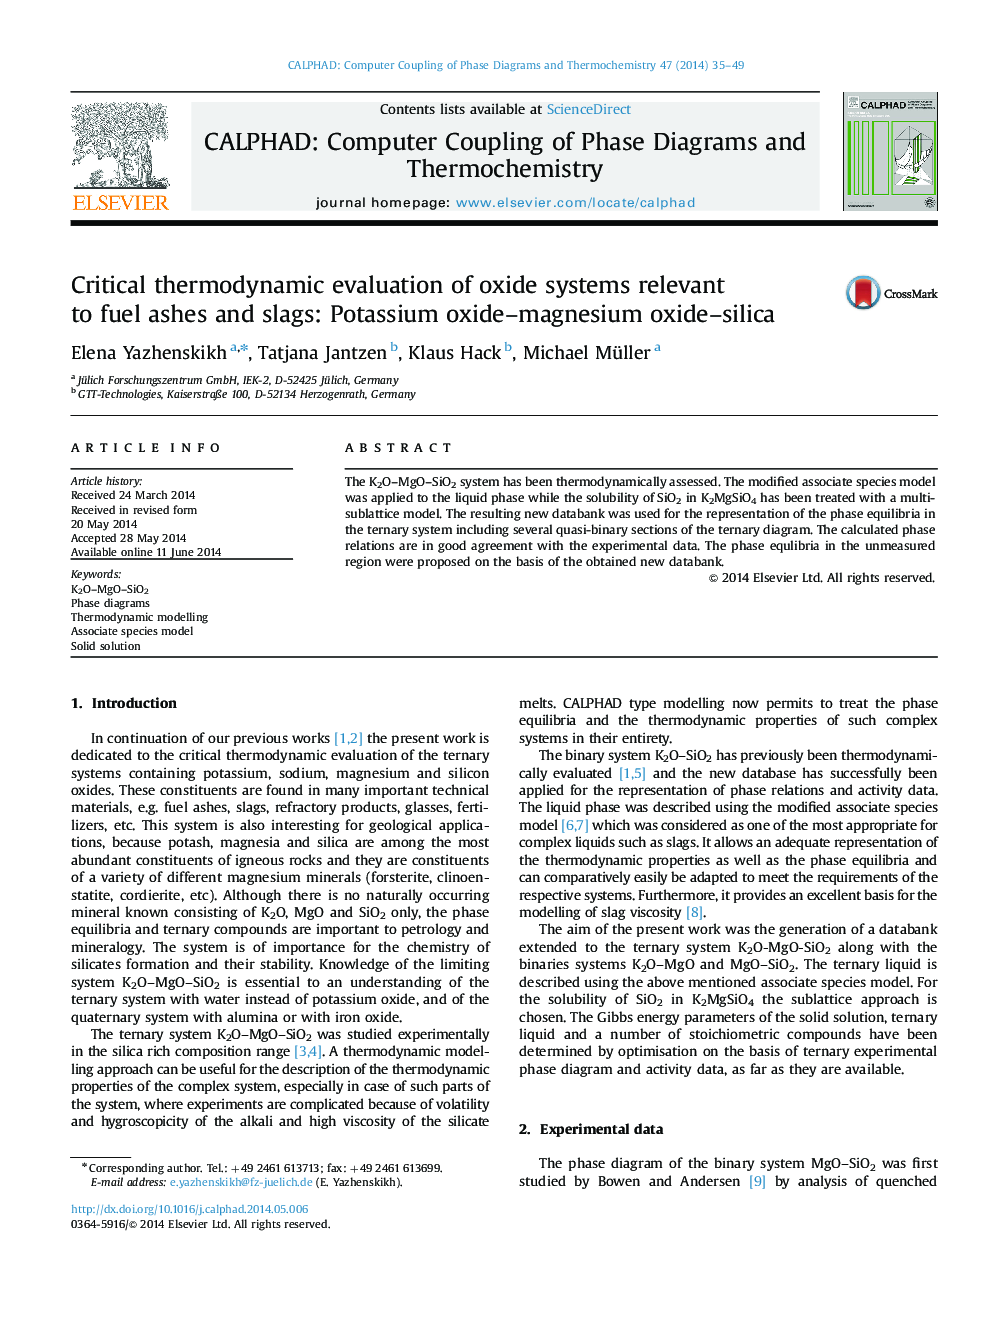 ارزیابی ترمودینامیکی انتقادی از سیستم های اکسید مربوط به خاکستر سوخت و سرباره: اکسید پتاسیم، منیزیم، سیلیکا 